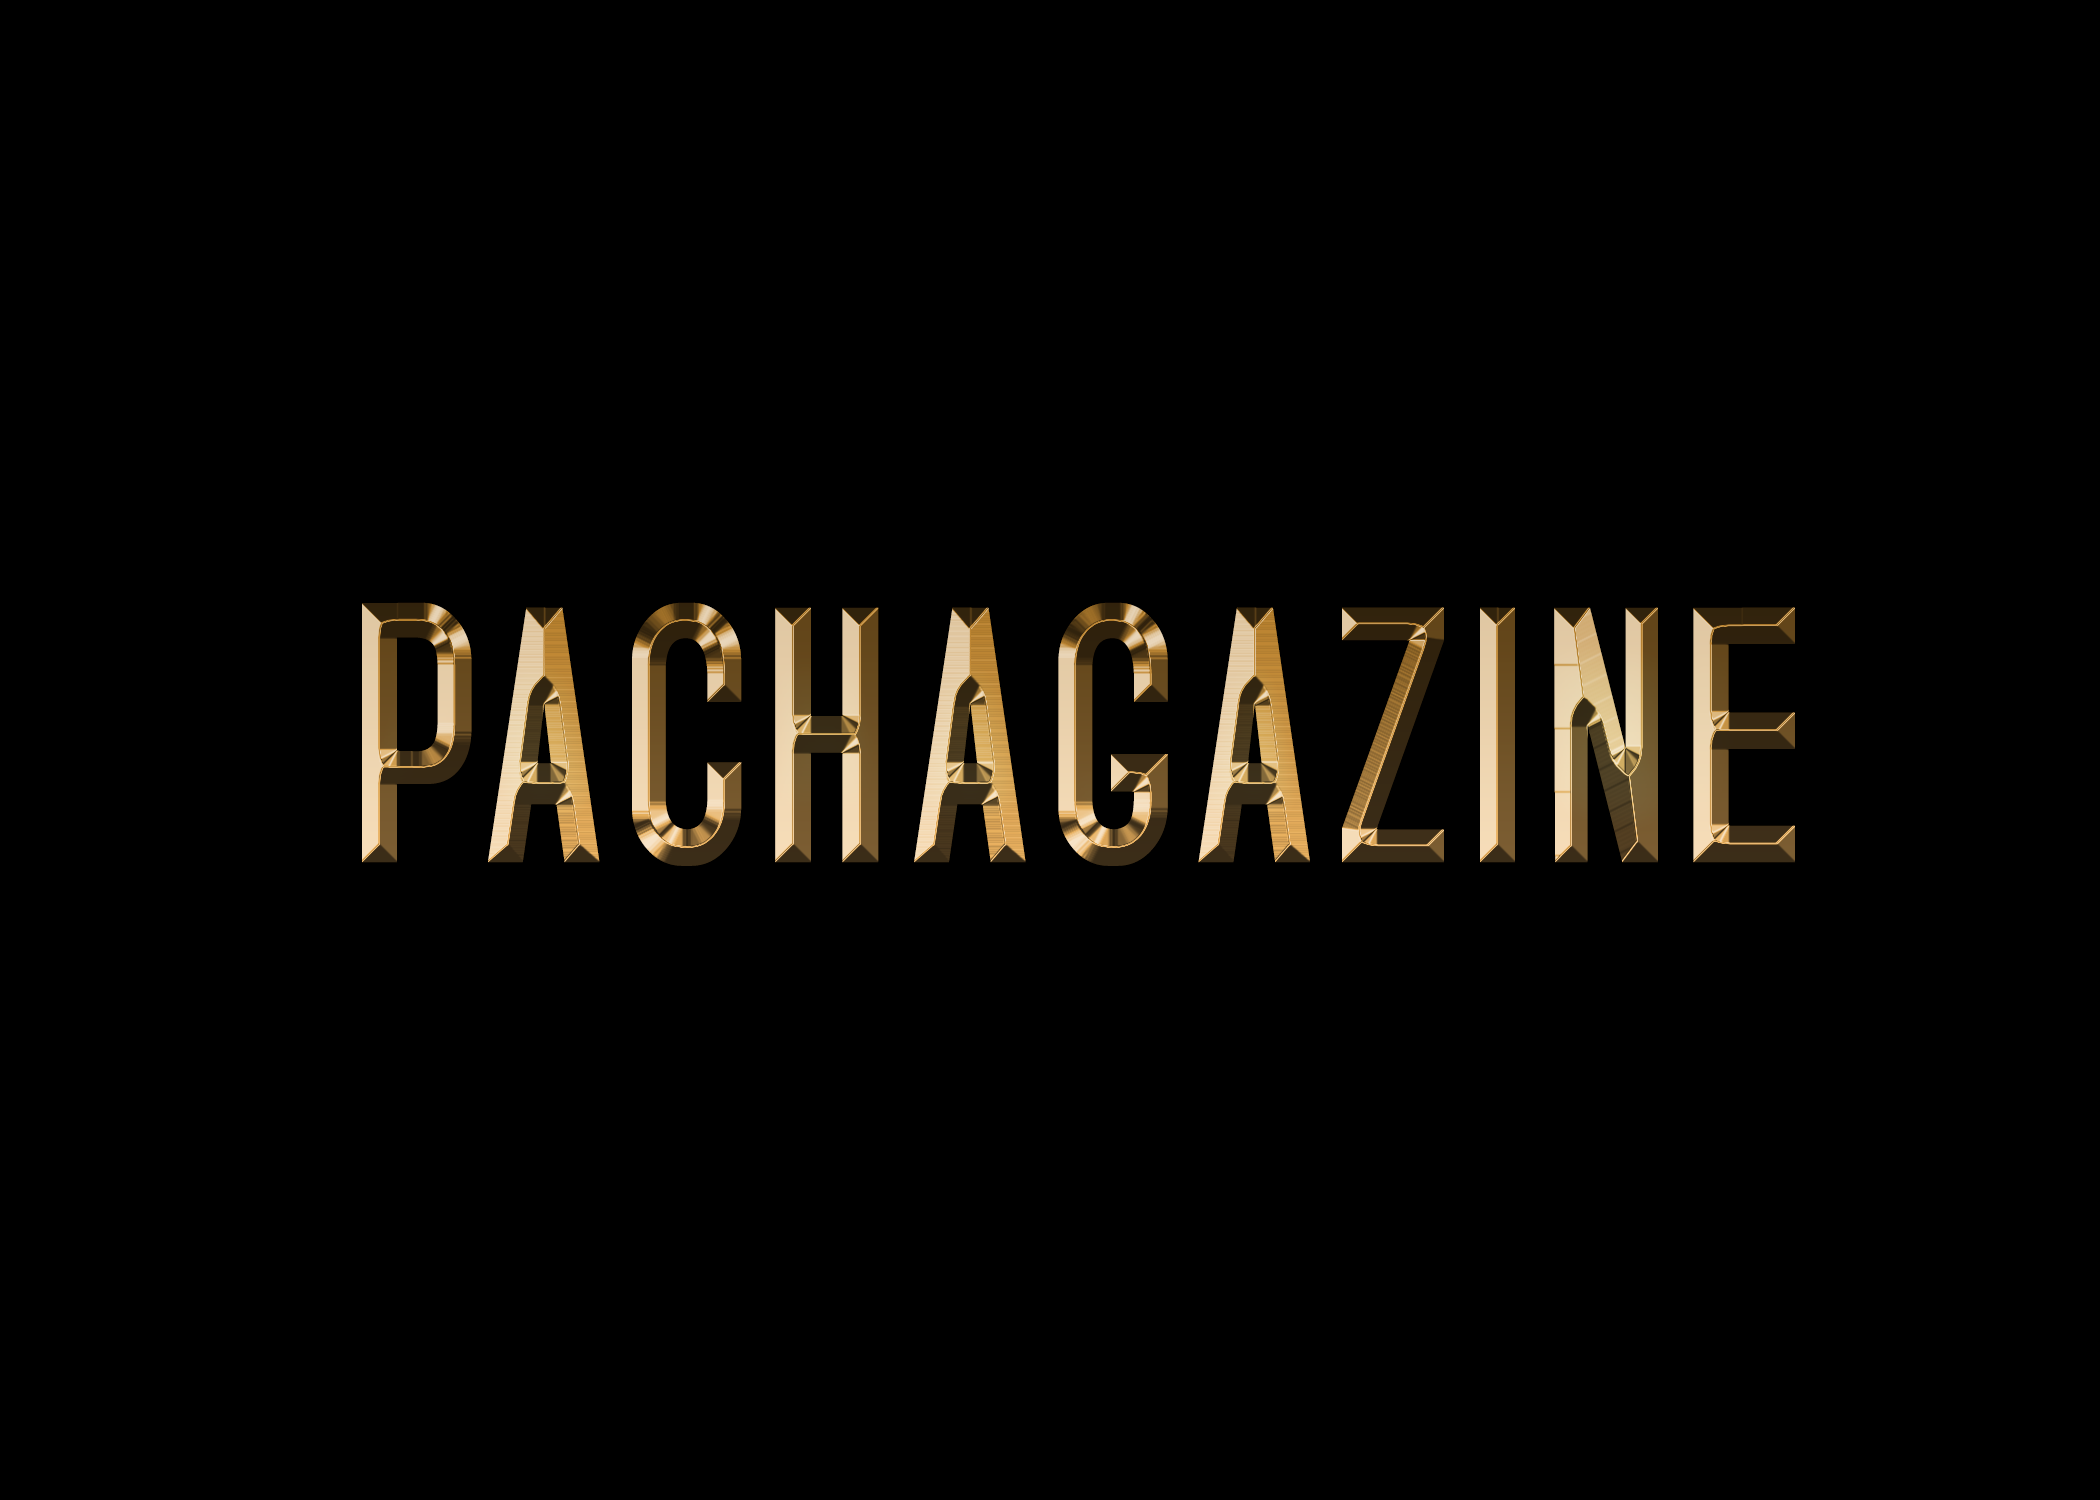 pachagazine logo